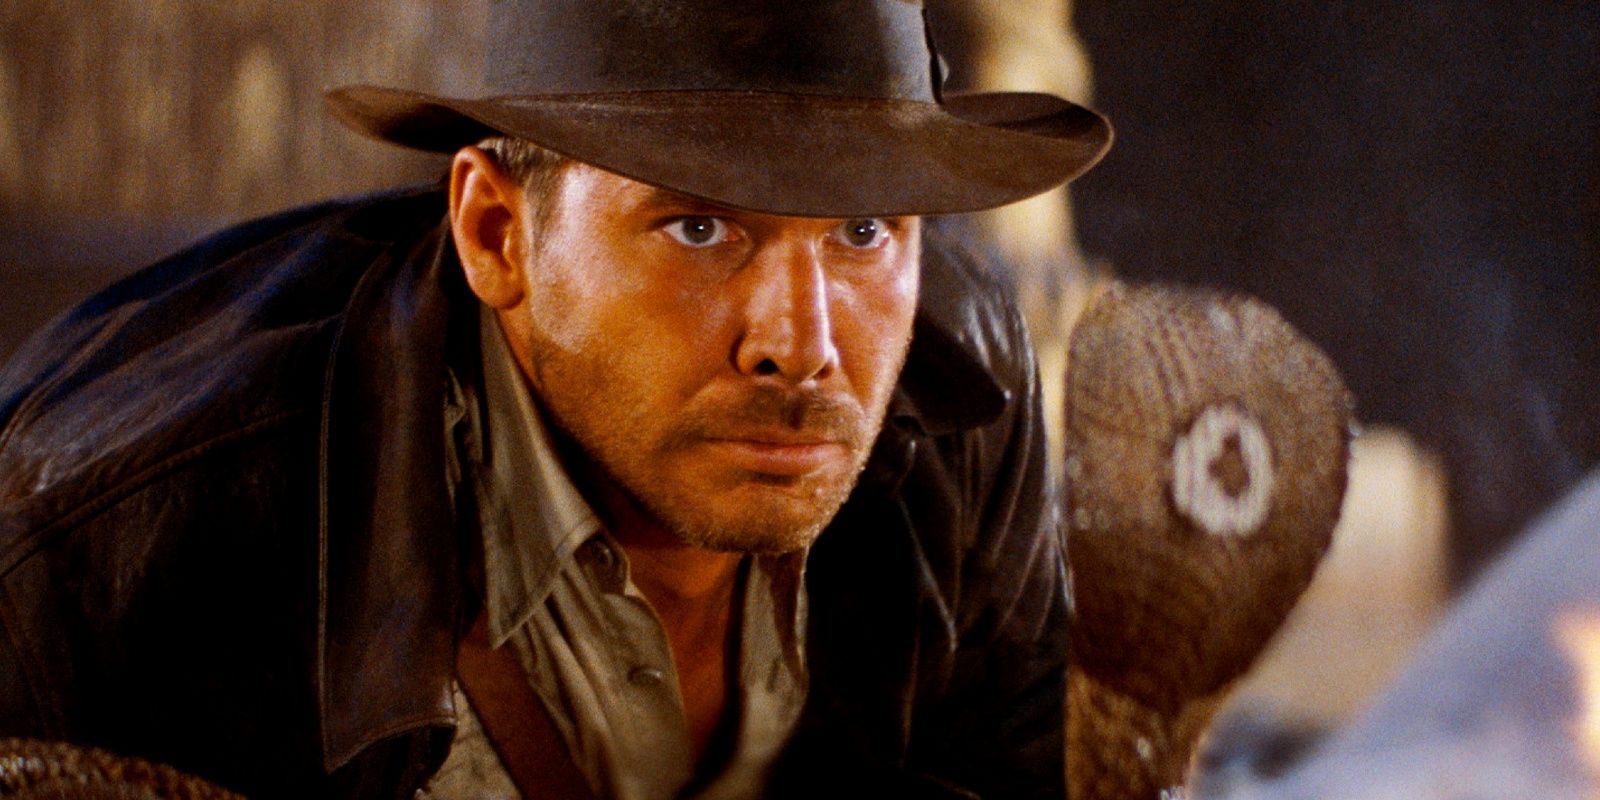 La infame escena de la serpiente de Indiana Jones pierde "puntos" de precisión en la evaluación de un experto